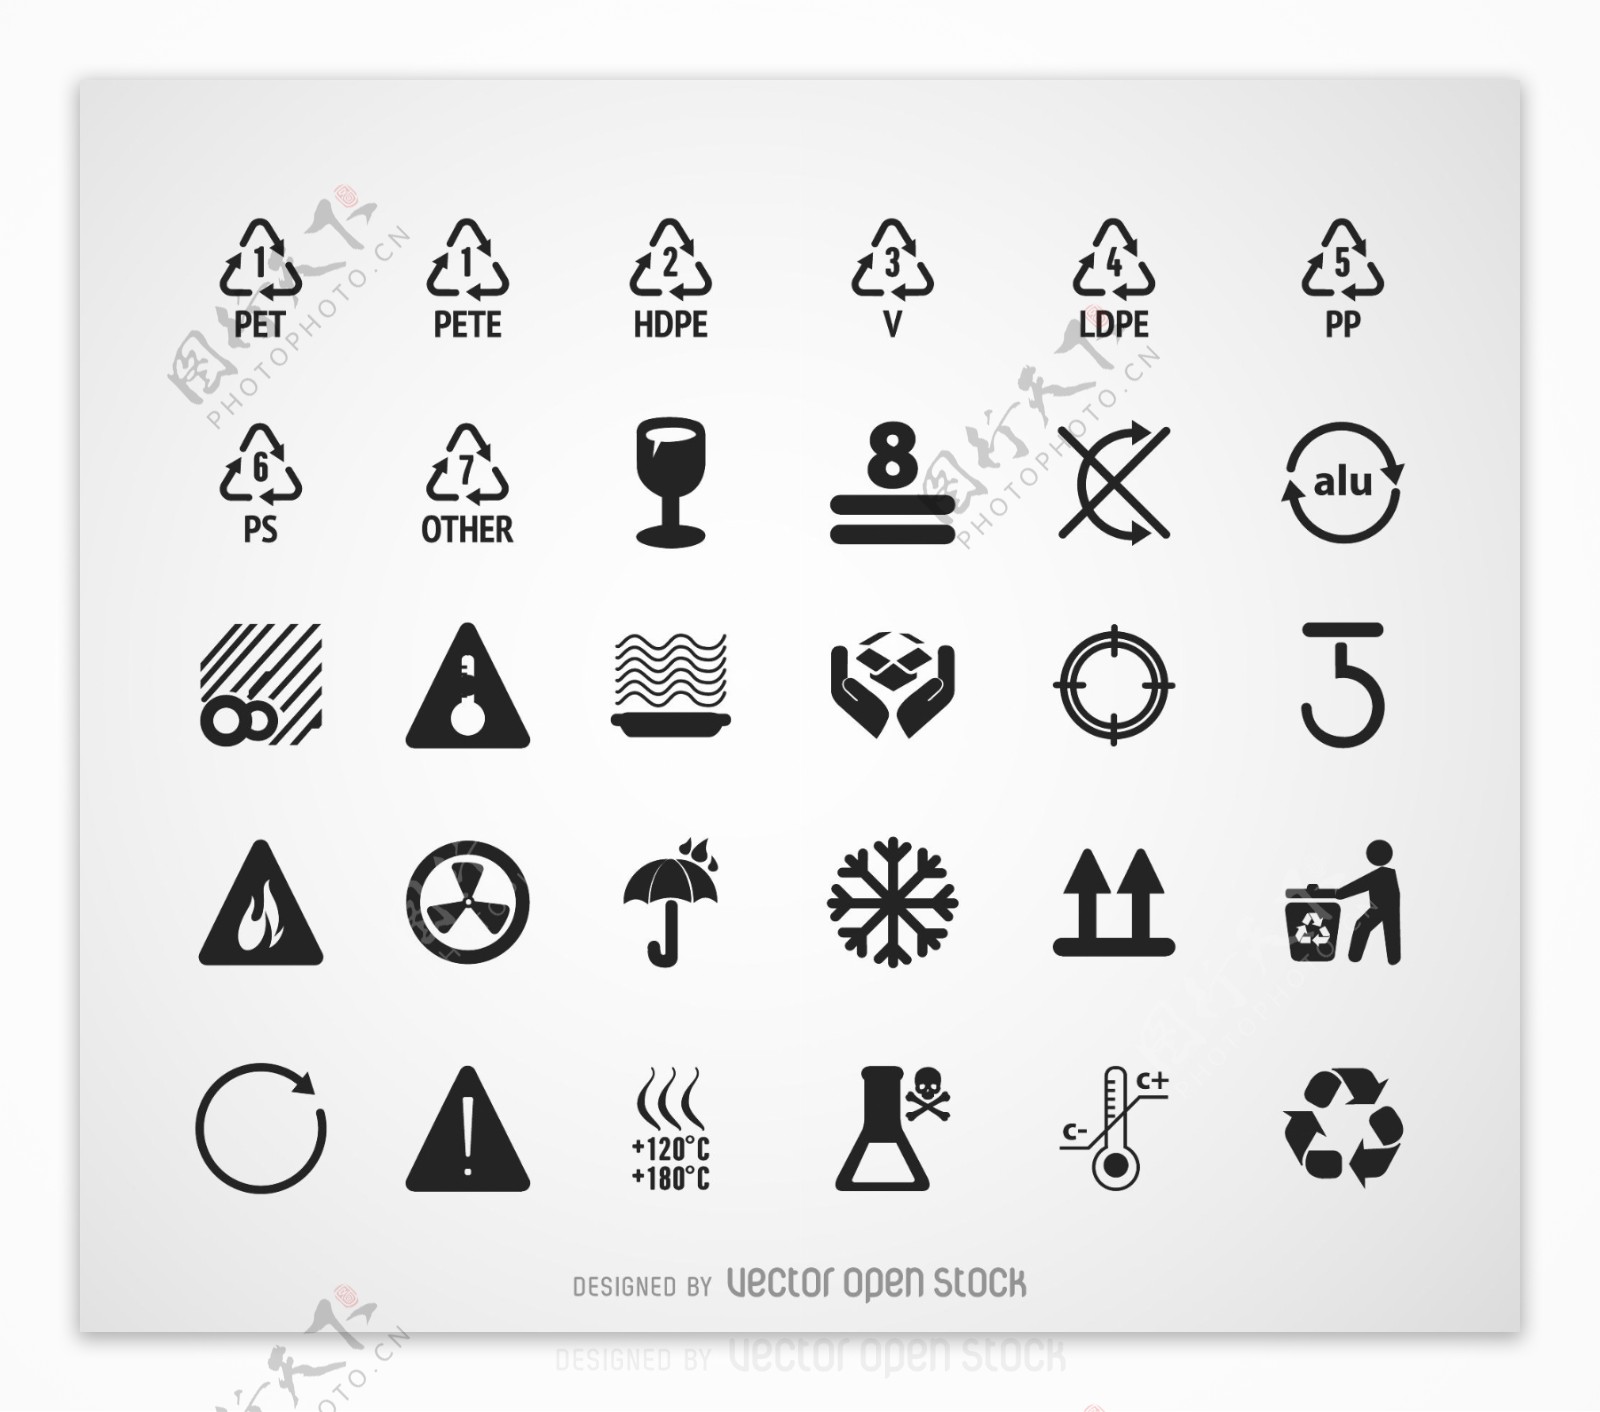 回收符号和图形设置